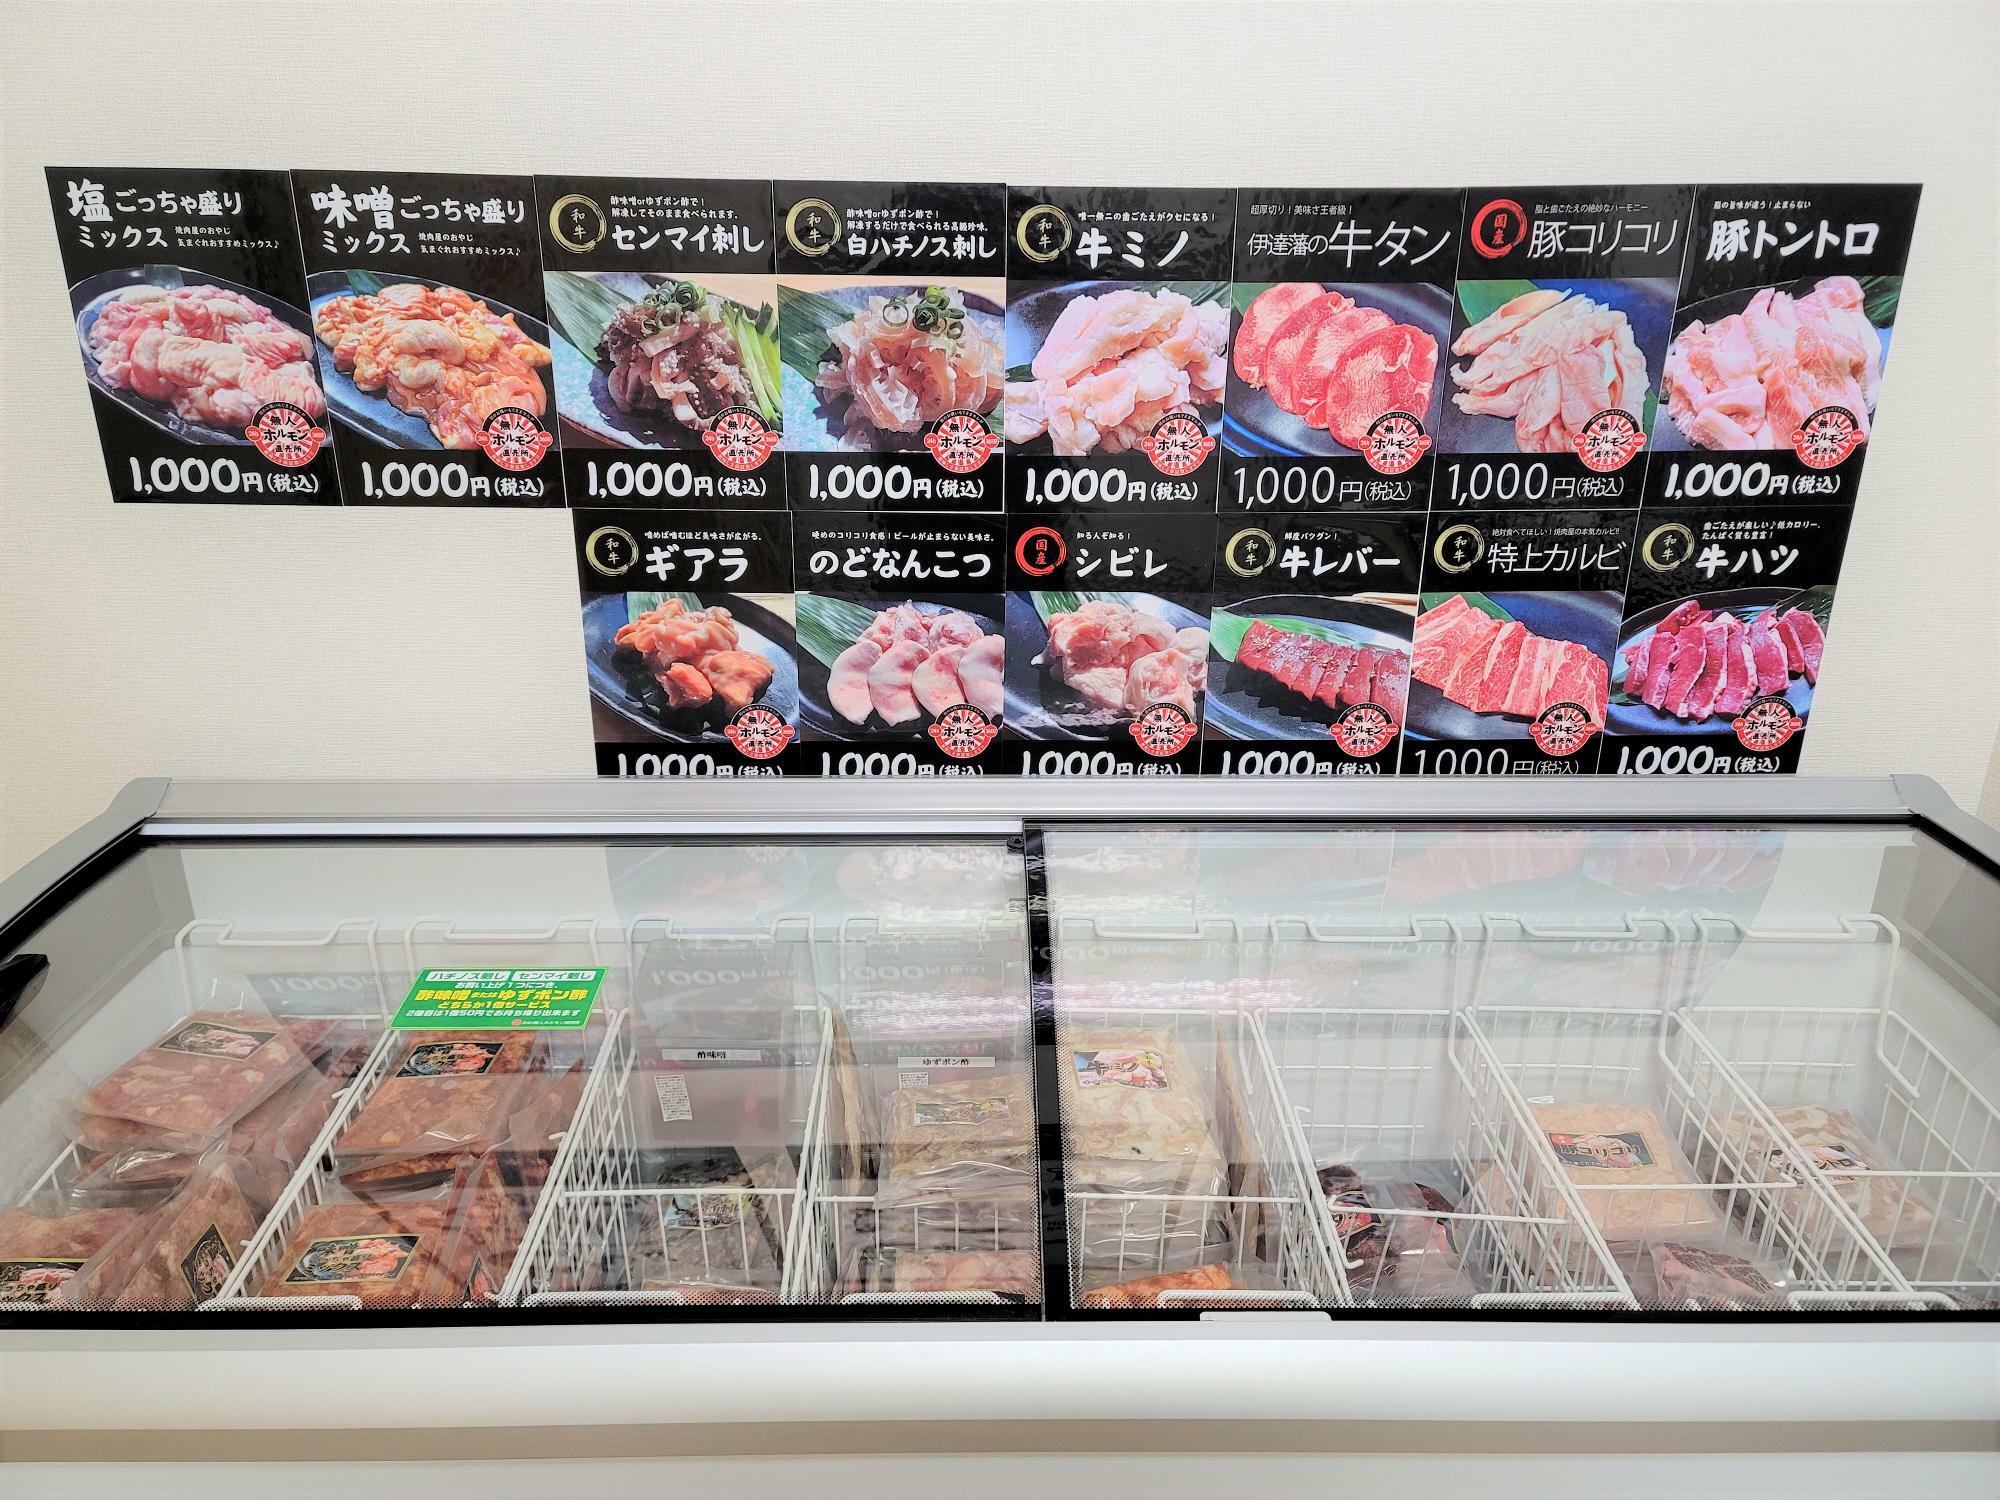 「24h 無人ホルモン直売所 徳島吉野本町店」にある冷凍庫。